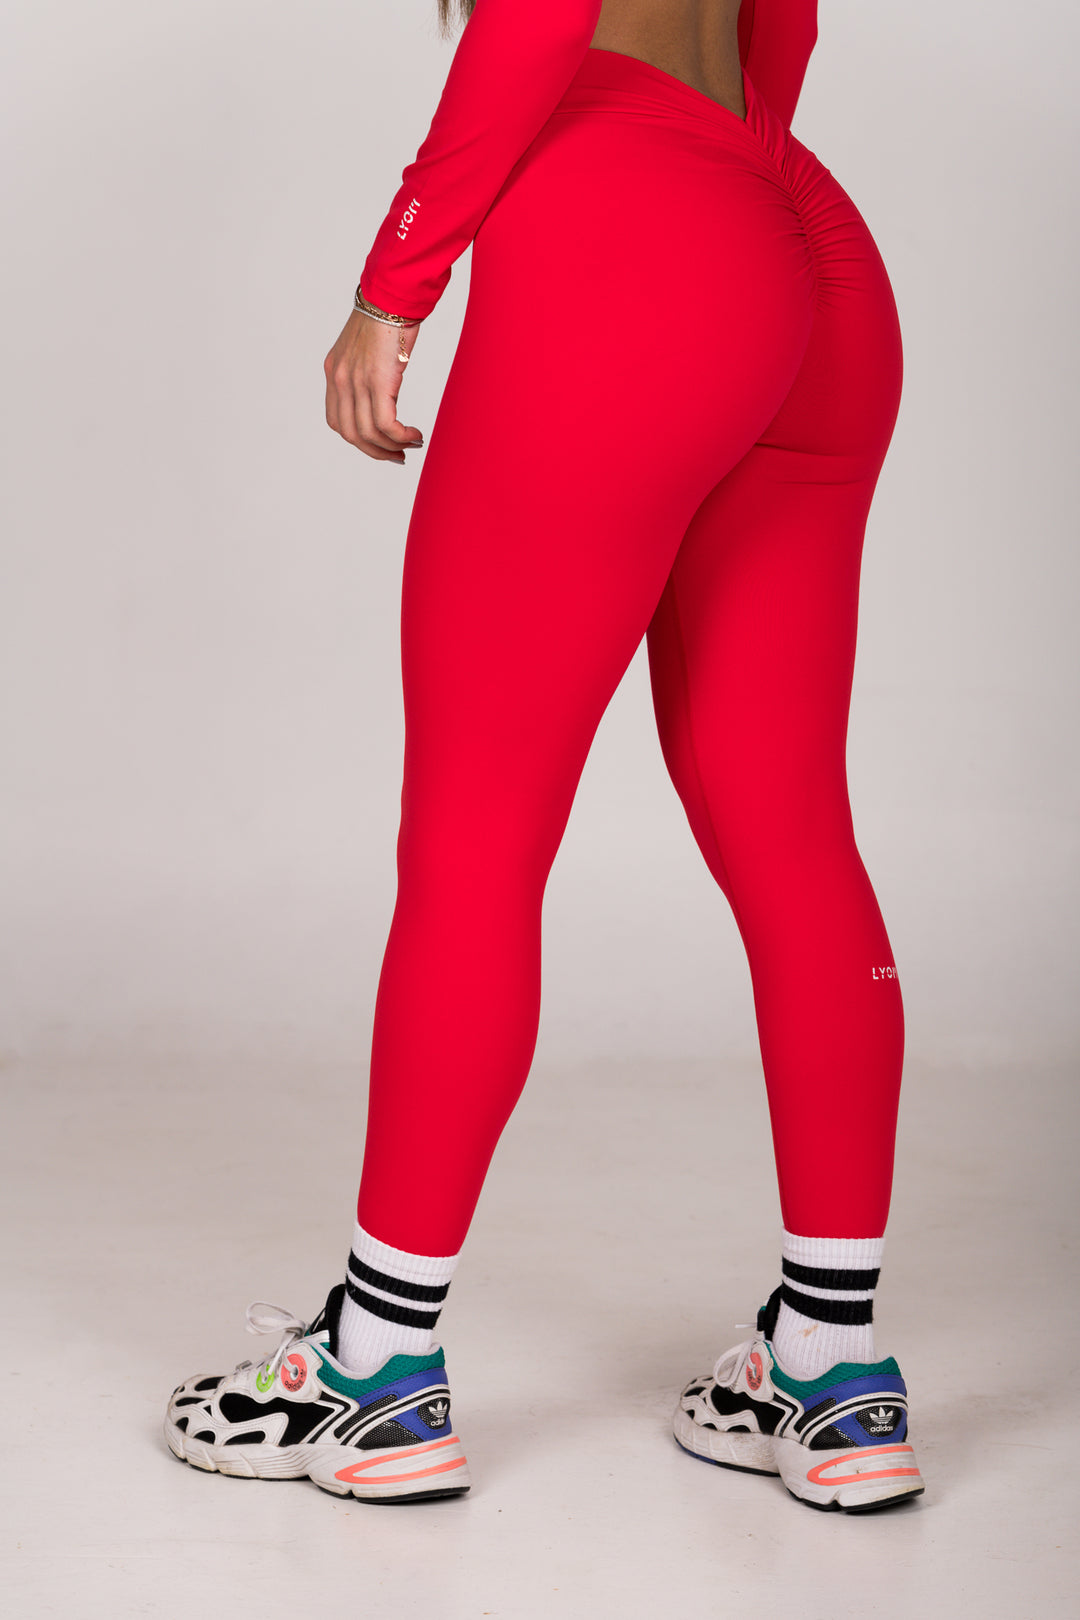 Conjunto deportivo Fire Sports Pants Femenil Rojo/Negro